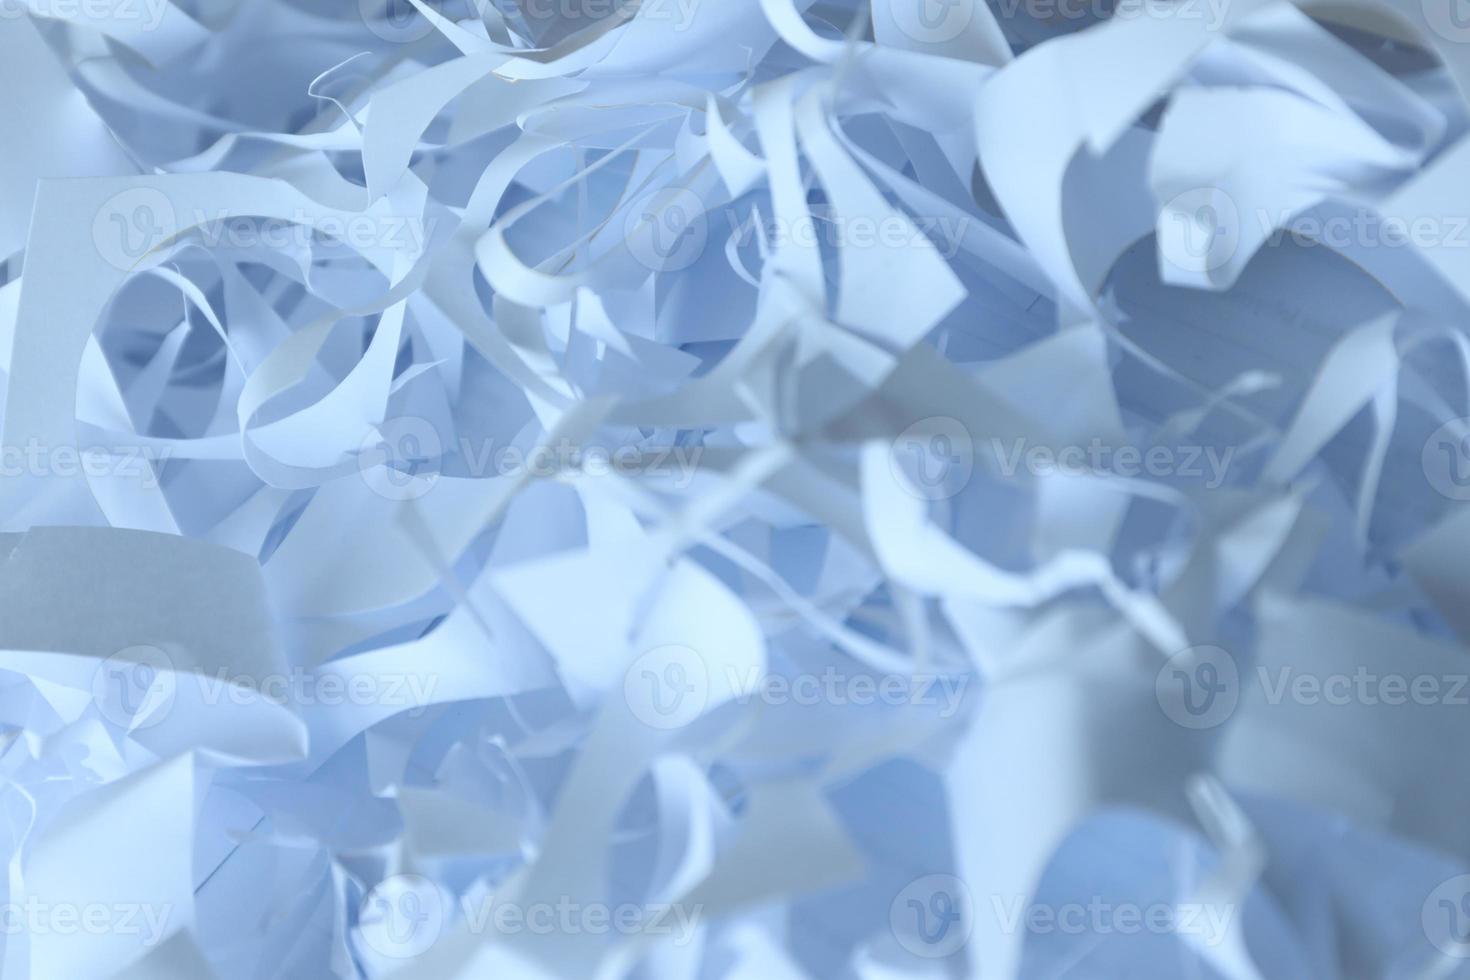 fundo de textura de papel picado, vista superior de muitas tiras de papel branco. pilha de papel cortado como enchimento de caixa para envio de itens frágeis foto